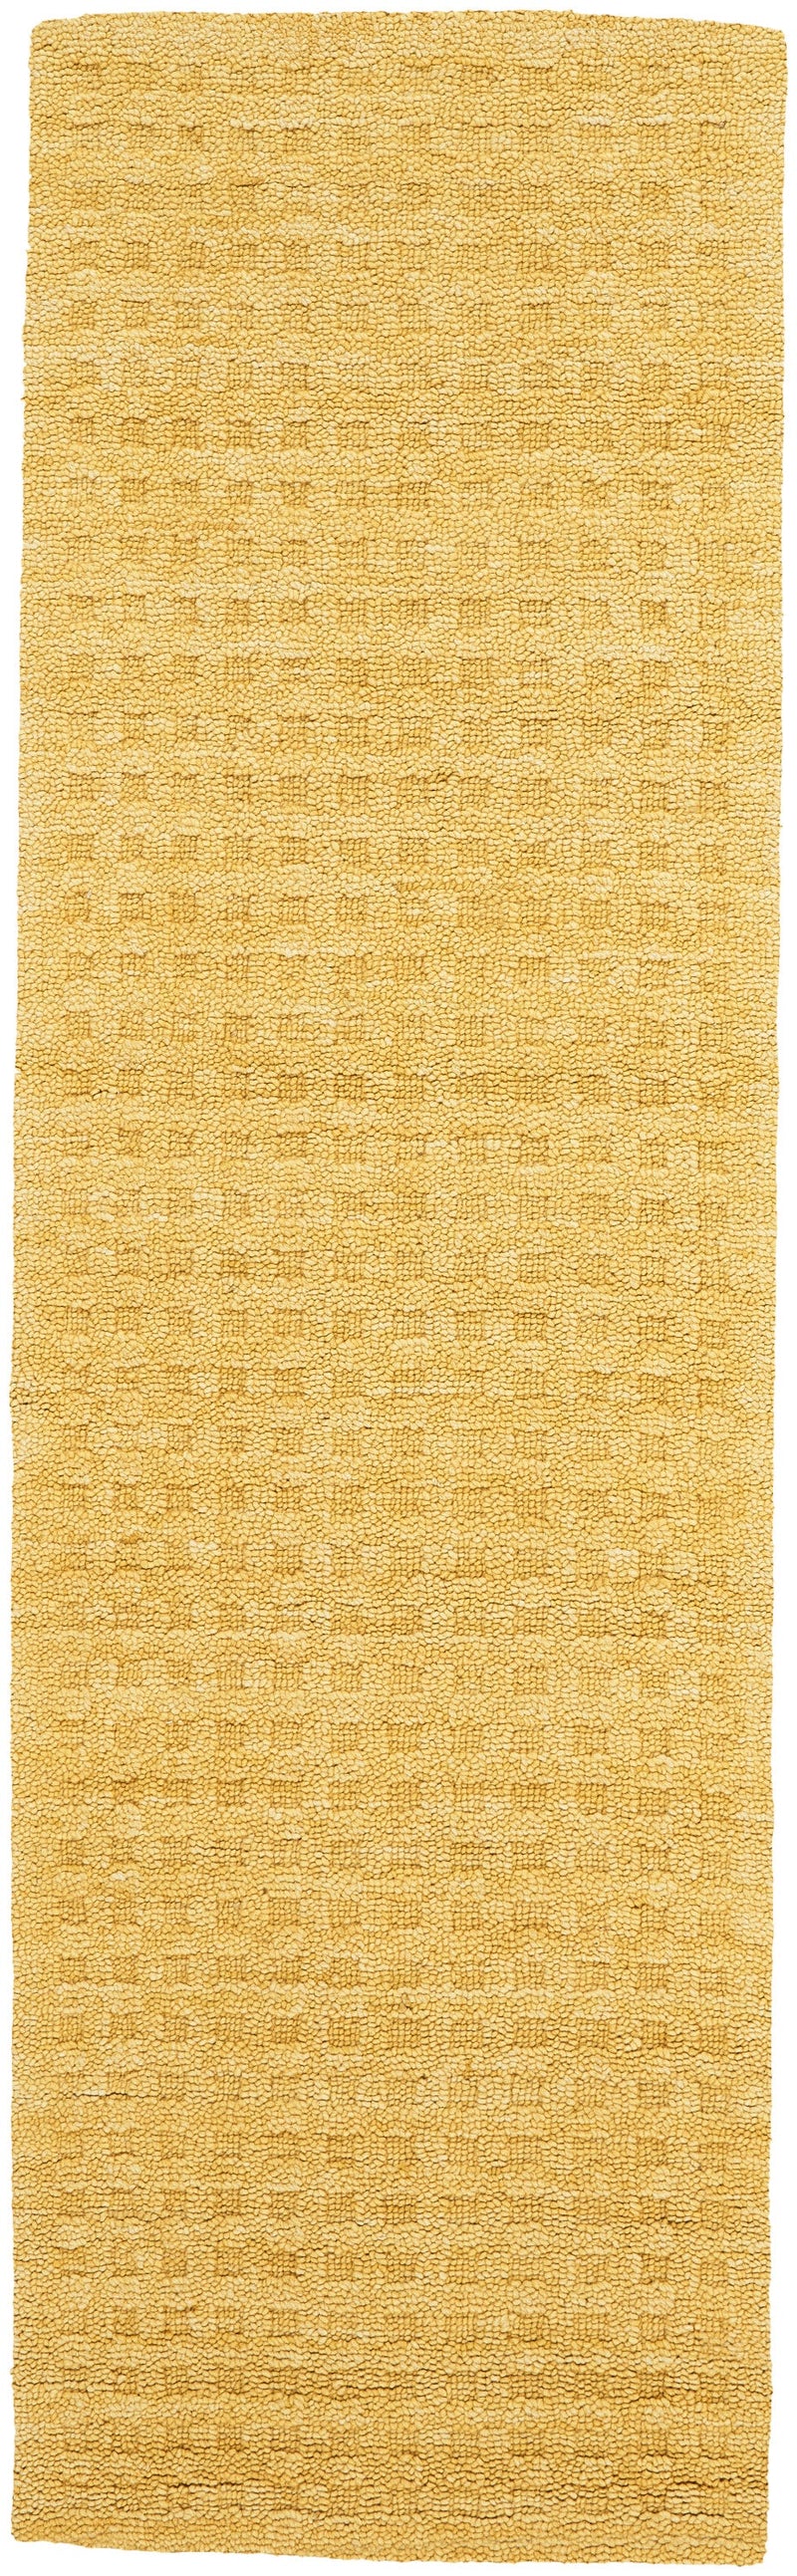 media image for marana handmade gold rug by nourison 99446400345 redo 2 289